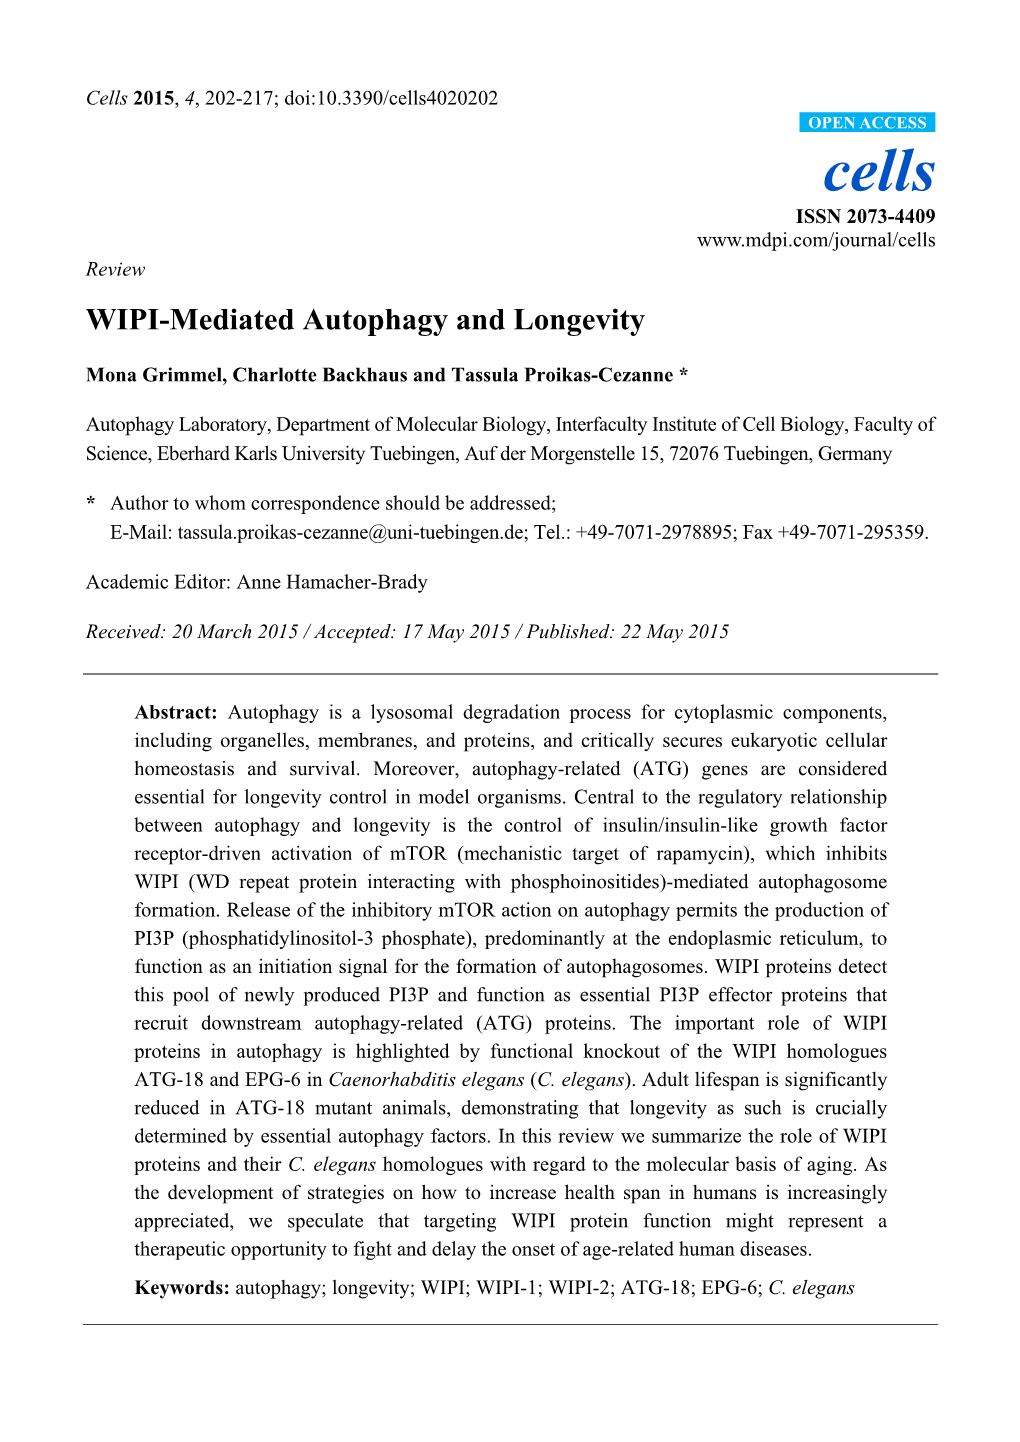 WIPI-Mediated Autophagy and Longevity